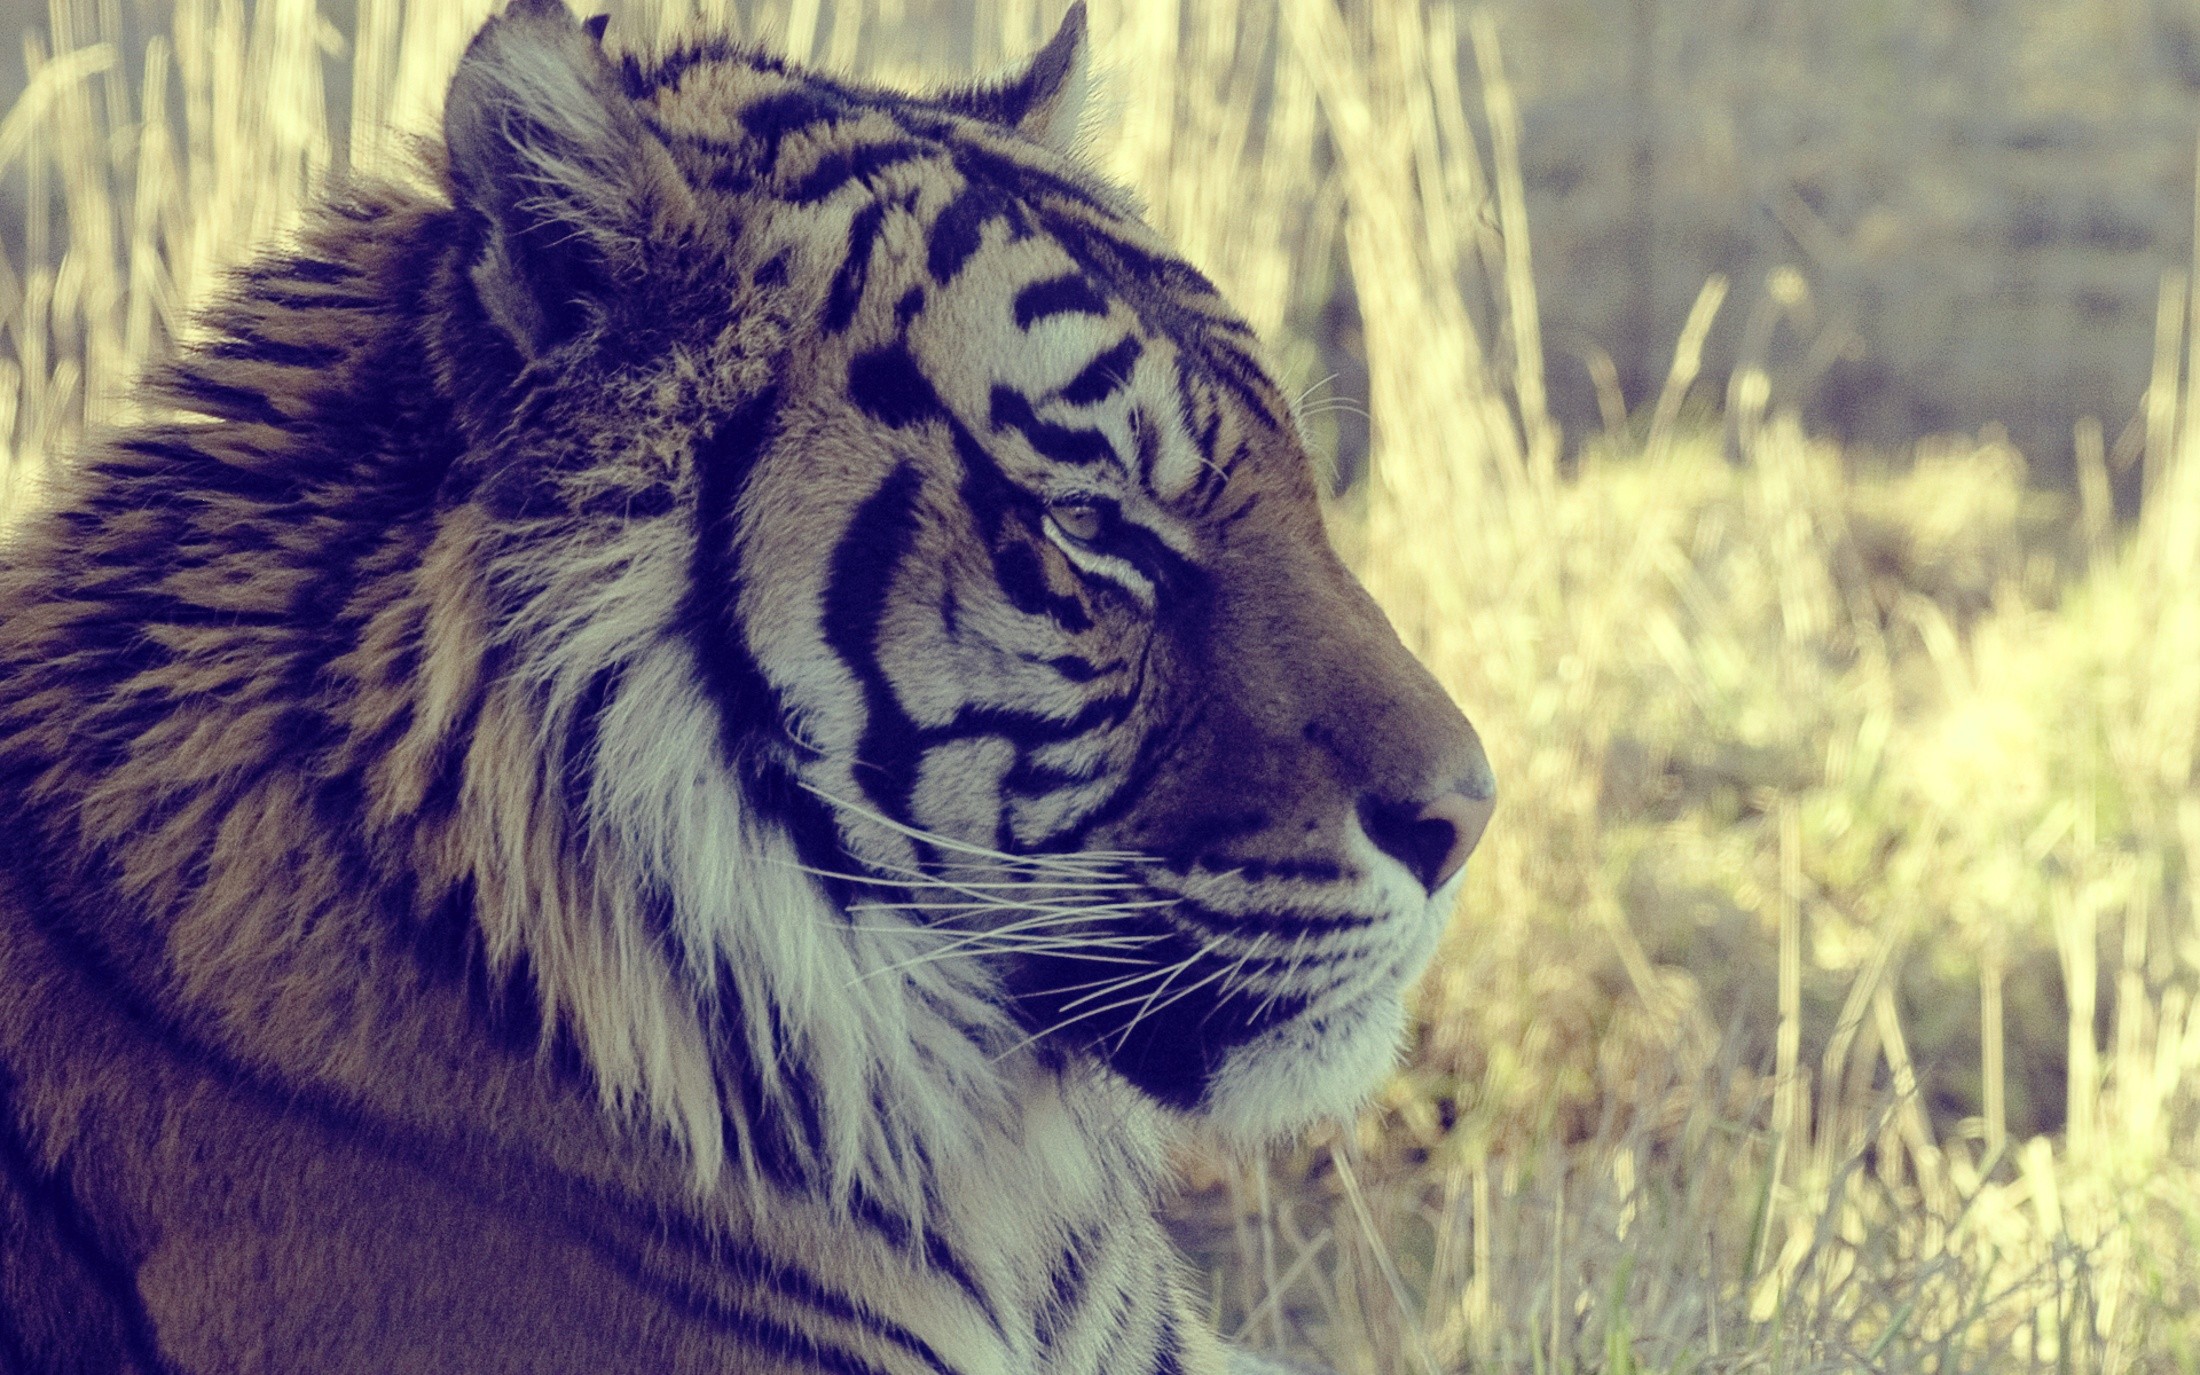 General 2200x1375 animals tiger big cats mammals closeup